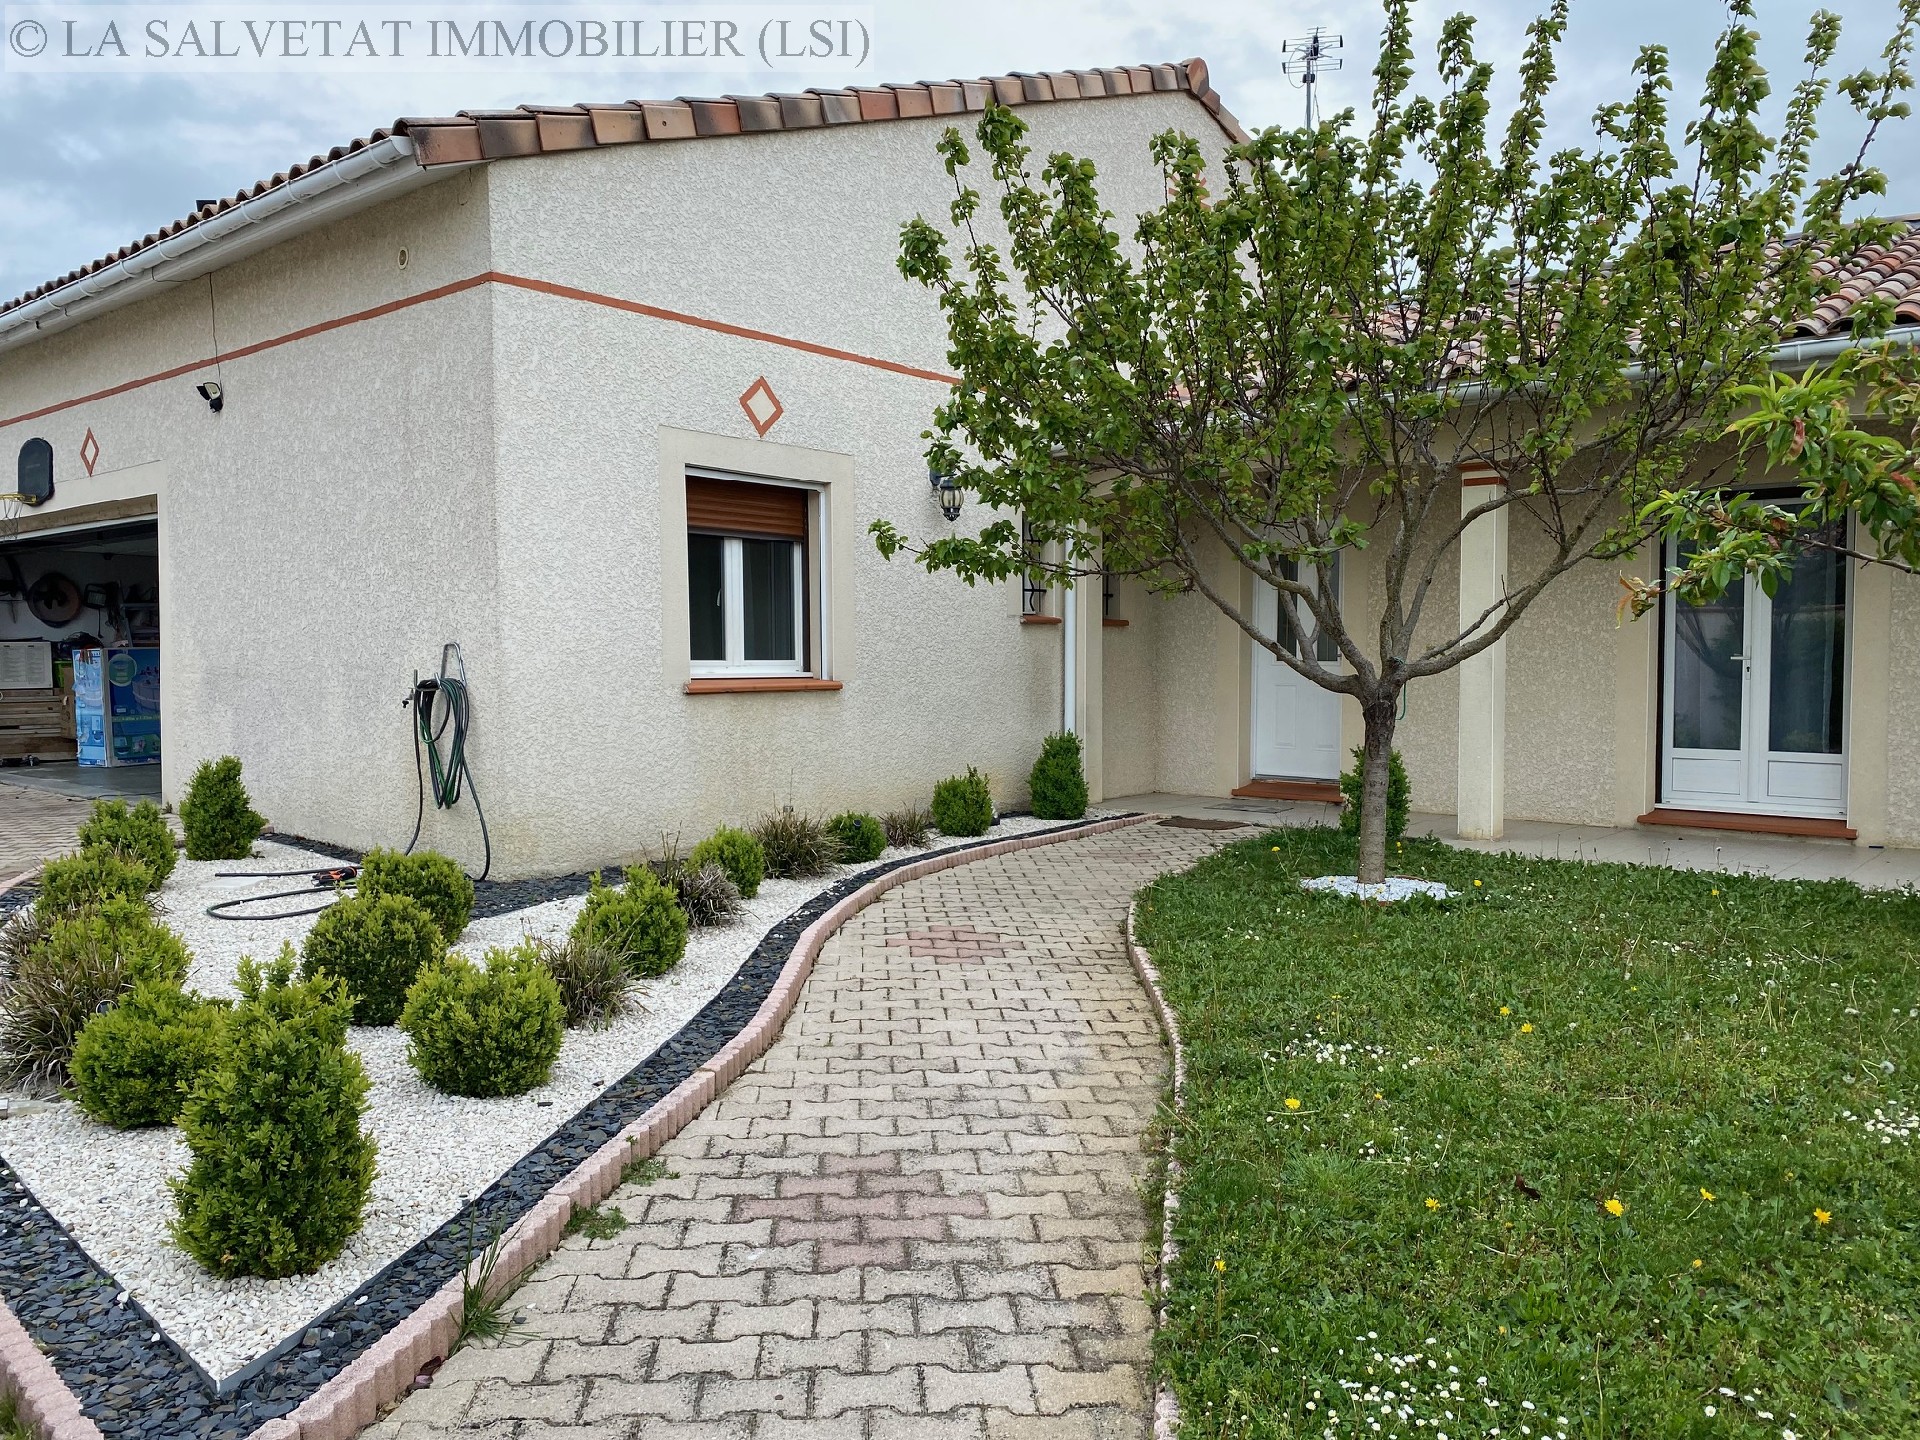 Vente maison-villa - FONTENILLES<br>160 m², 7 pièces